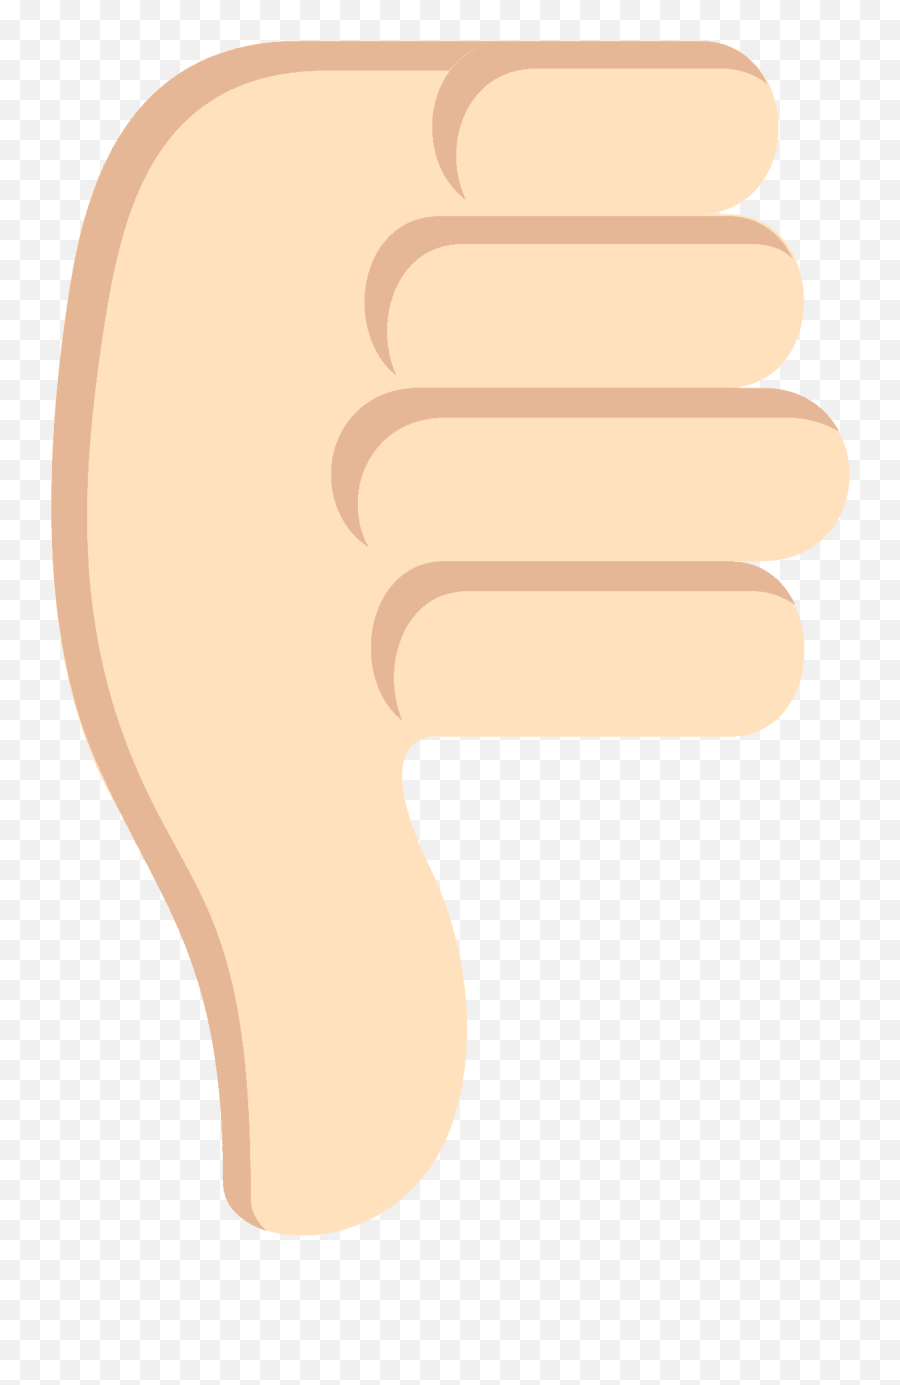 Thumbs Down Light Skin Tone Emoji High Definition Big - Fist,Star Fist Emoji